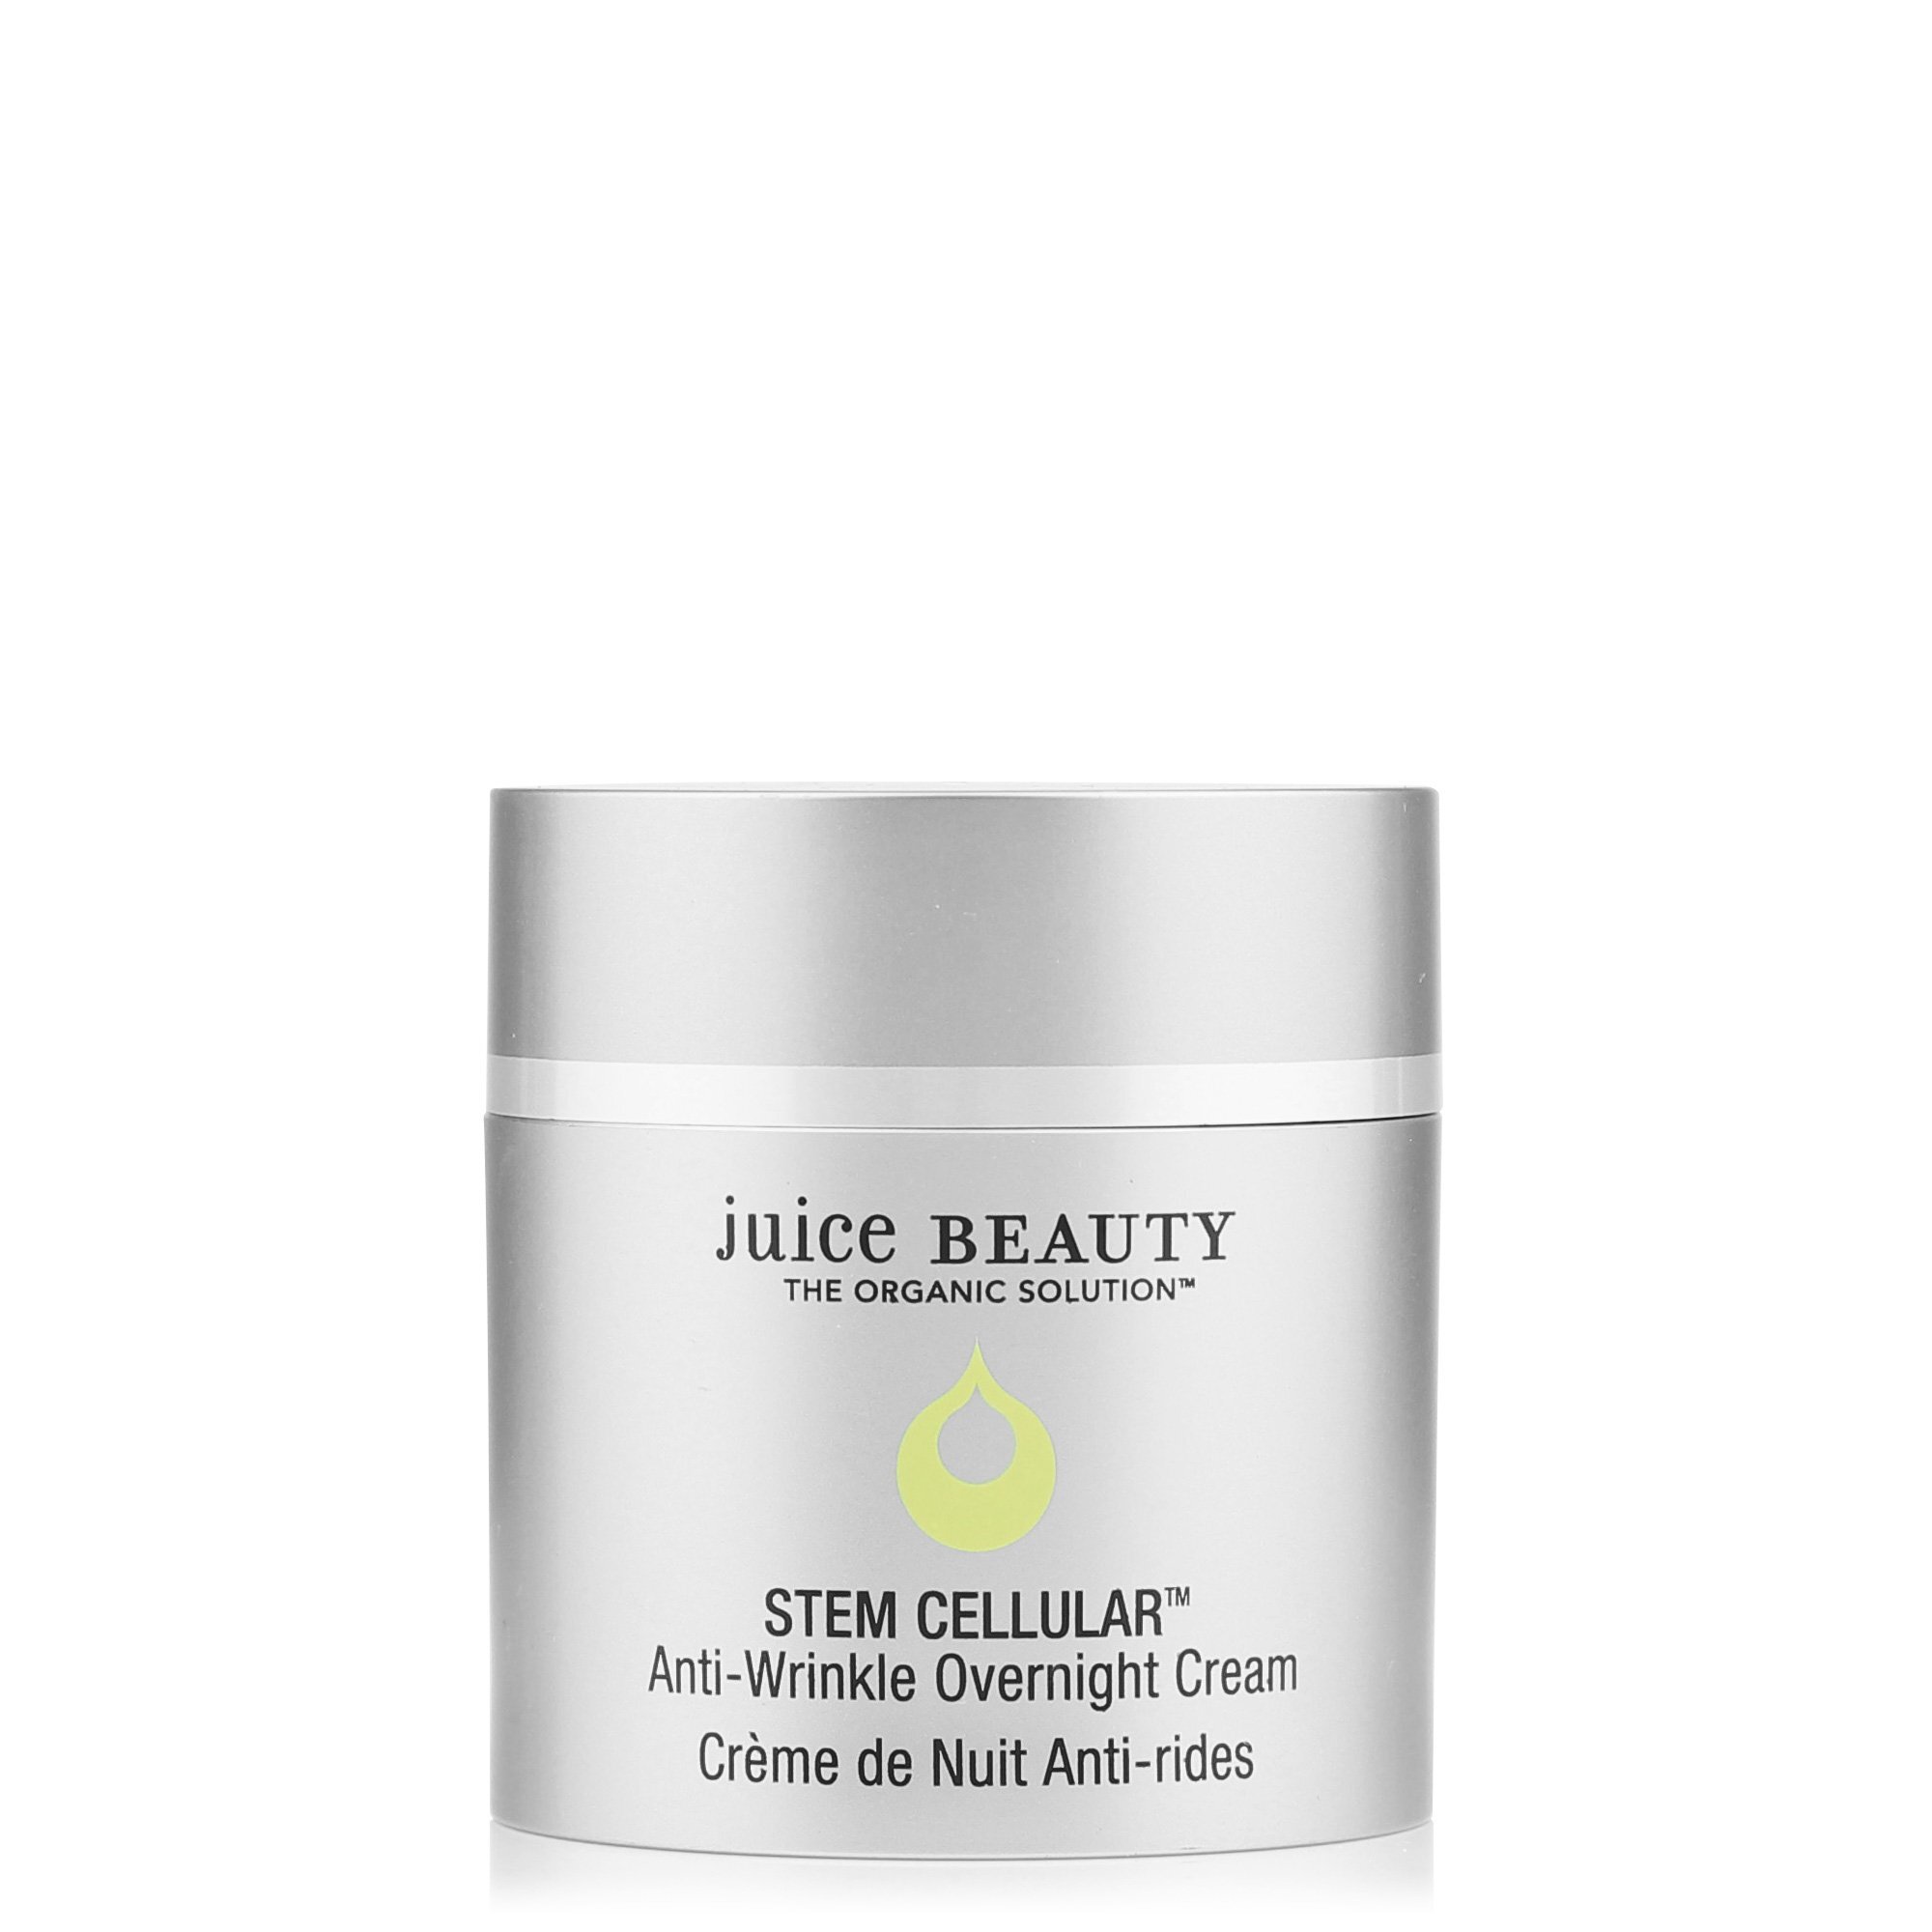 Juice Beauty STEM CELLULAR Anti-Wrinkle Overnight Cream (Copy)